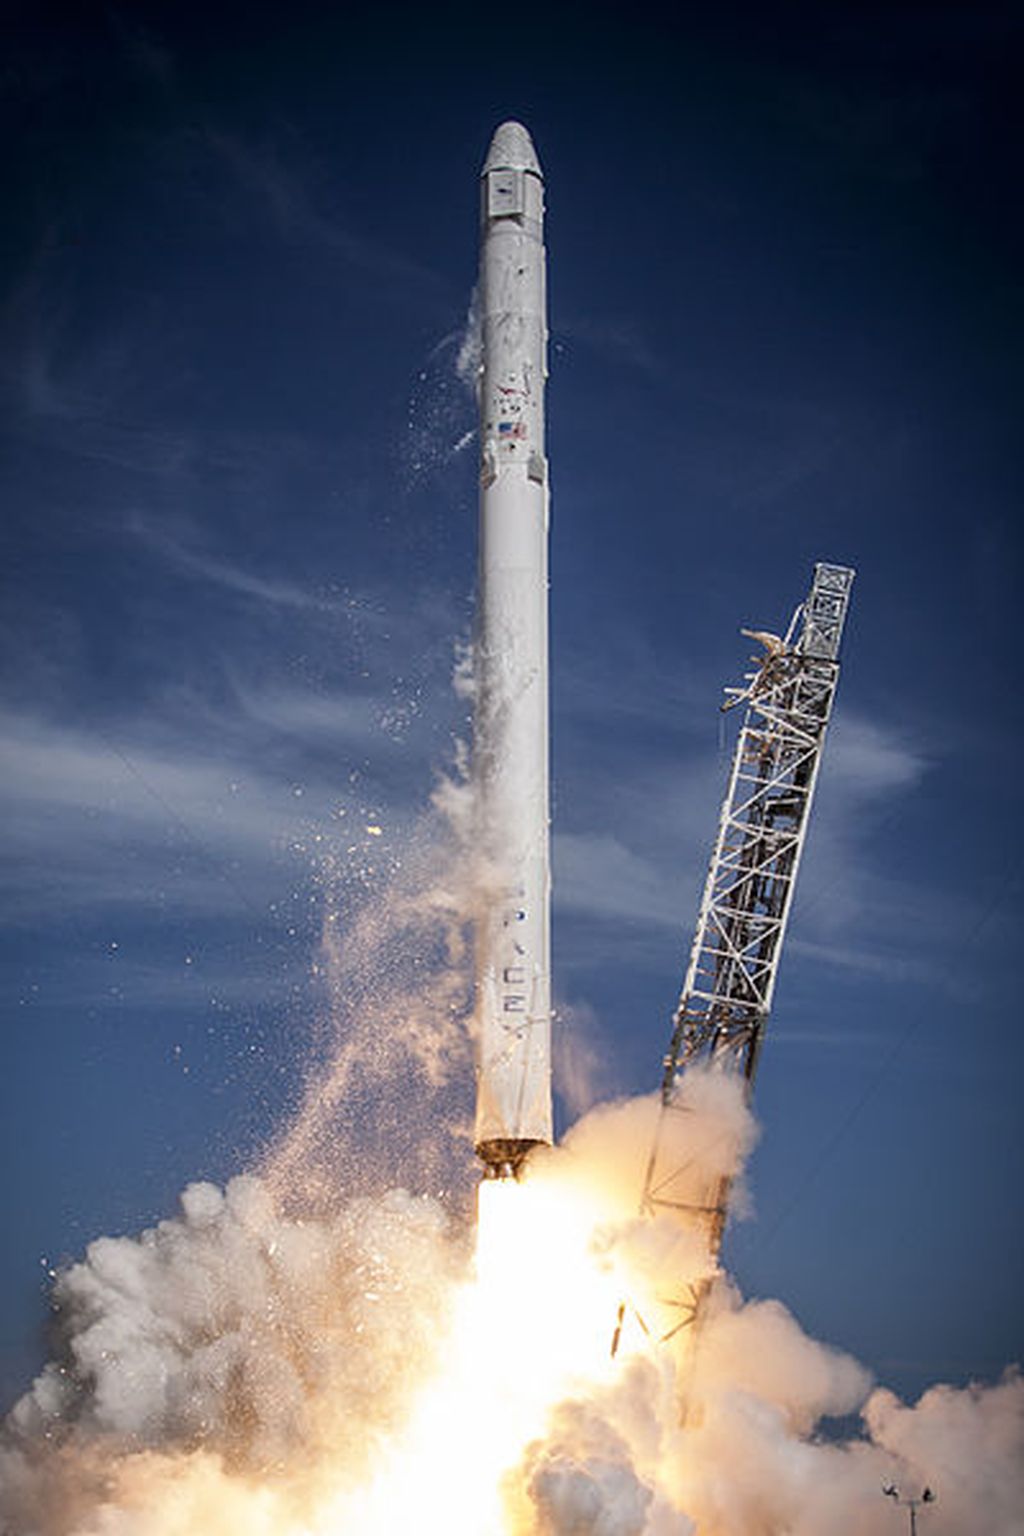 Roket peluncur Falcon 9 milik SpaceX. Tipe roket inilah yang diperkirakan akan jatuh ke sisi belakang Bulan pada 4 Maret 2022. Namun, bagian yang jatuh ke Bulan itu hanya roket tingkat kedua, bukan keseluruhan roket peluncur.